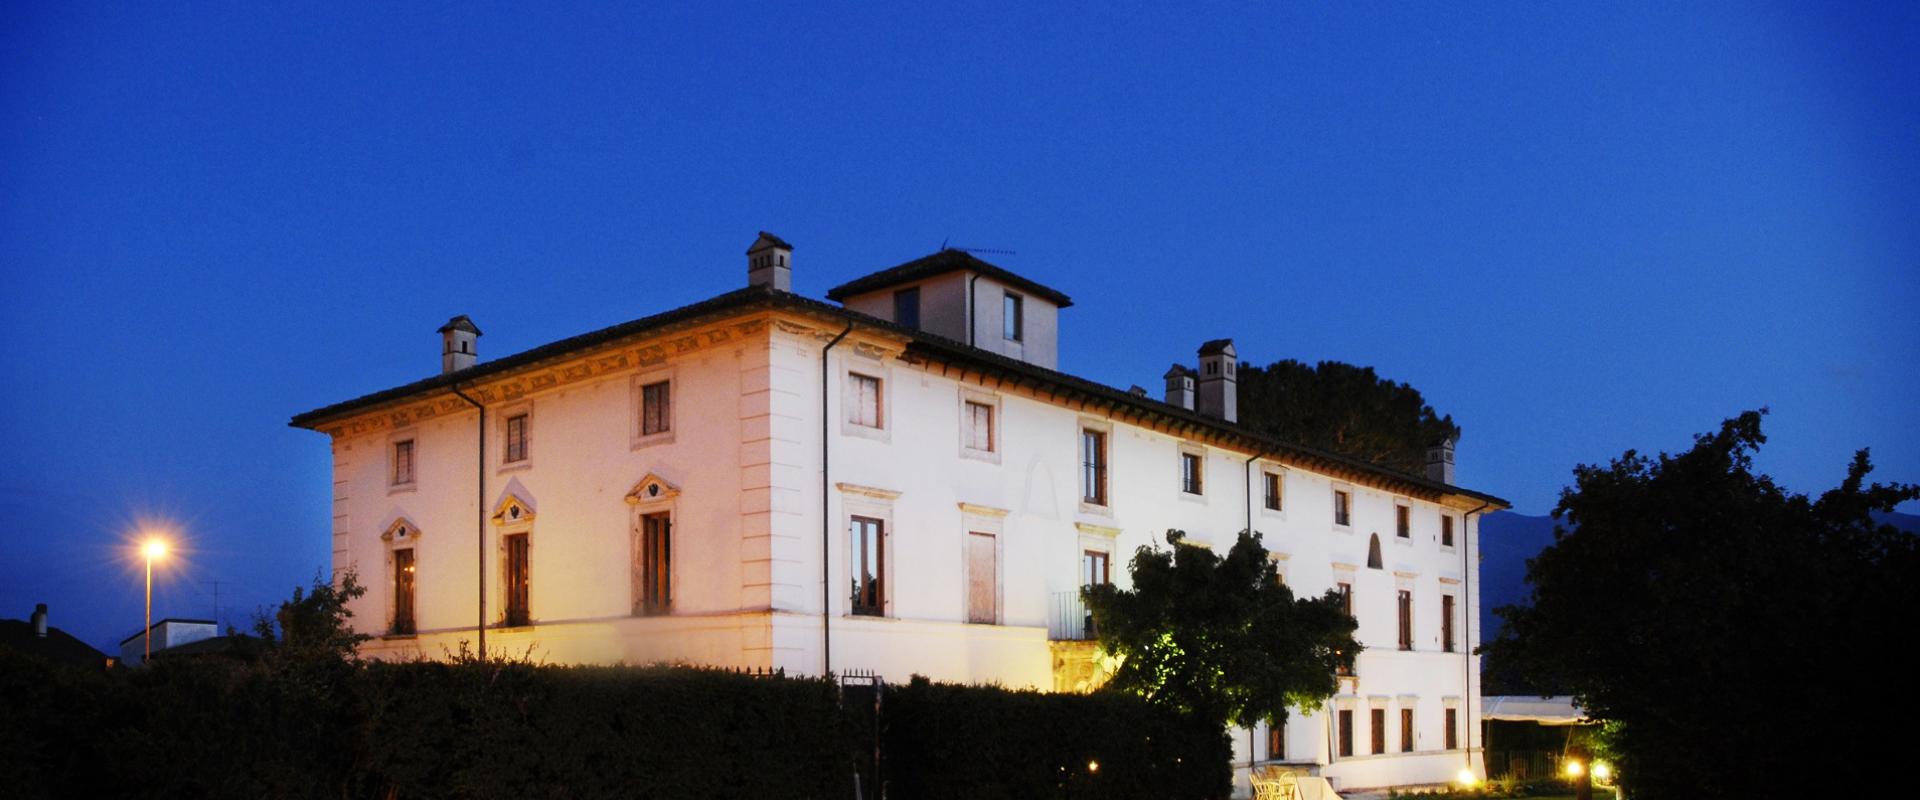 Historical Villa in L' Aquila area